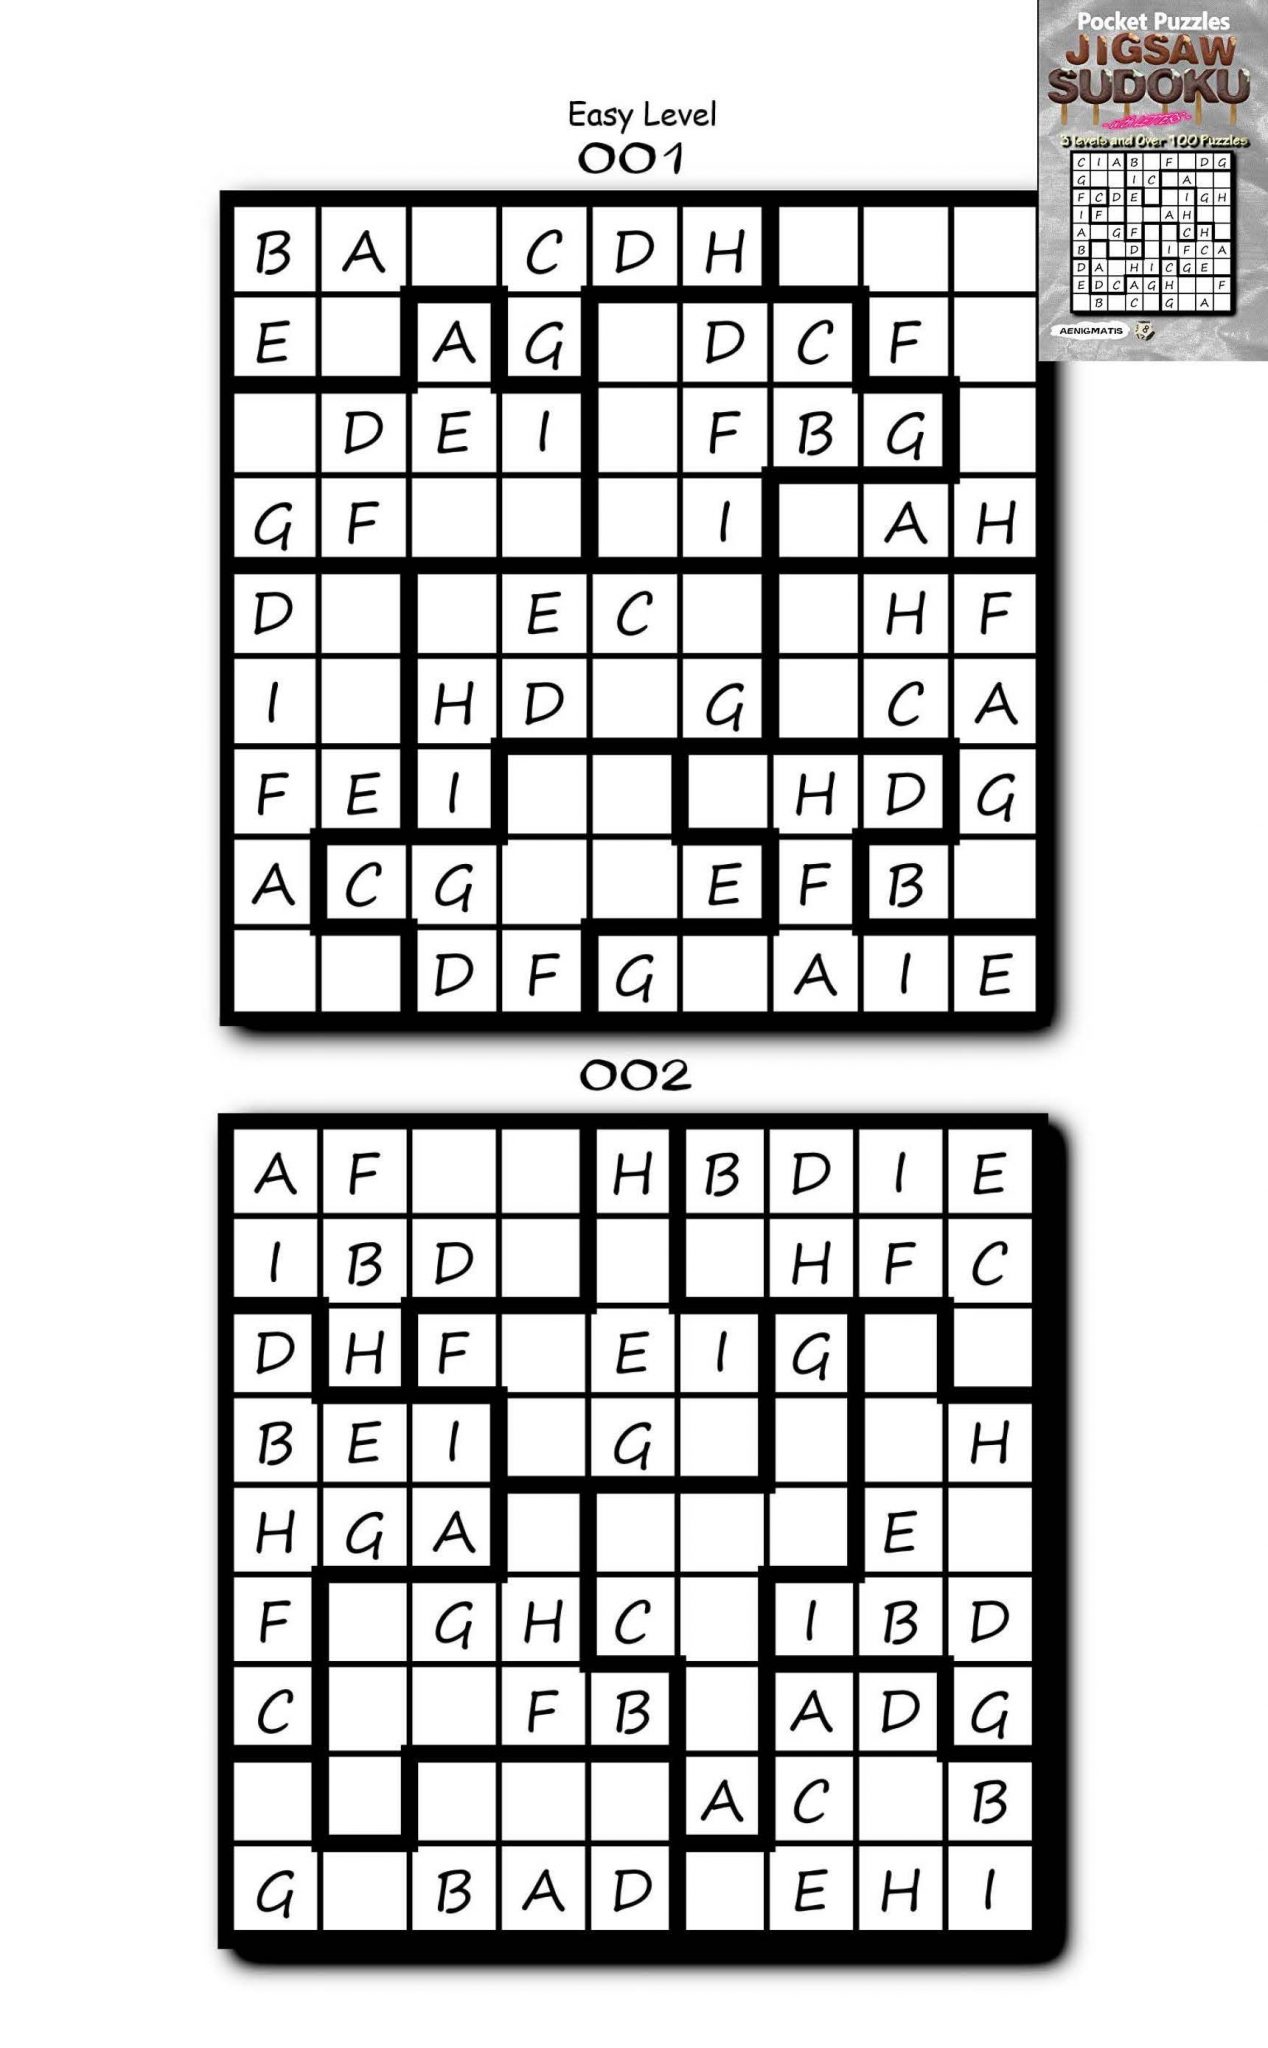 jigsaw-sudoku-printable